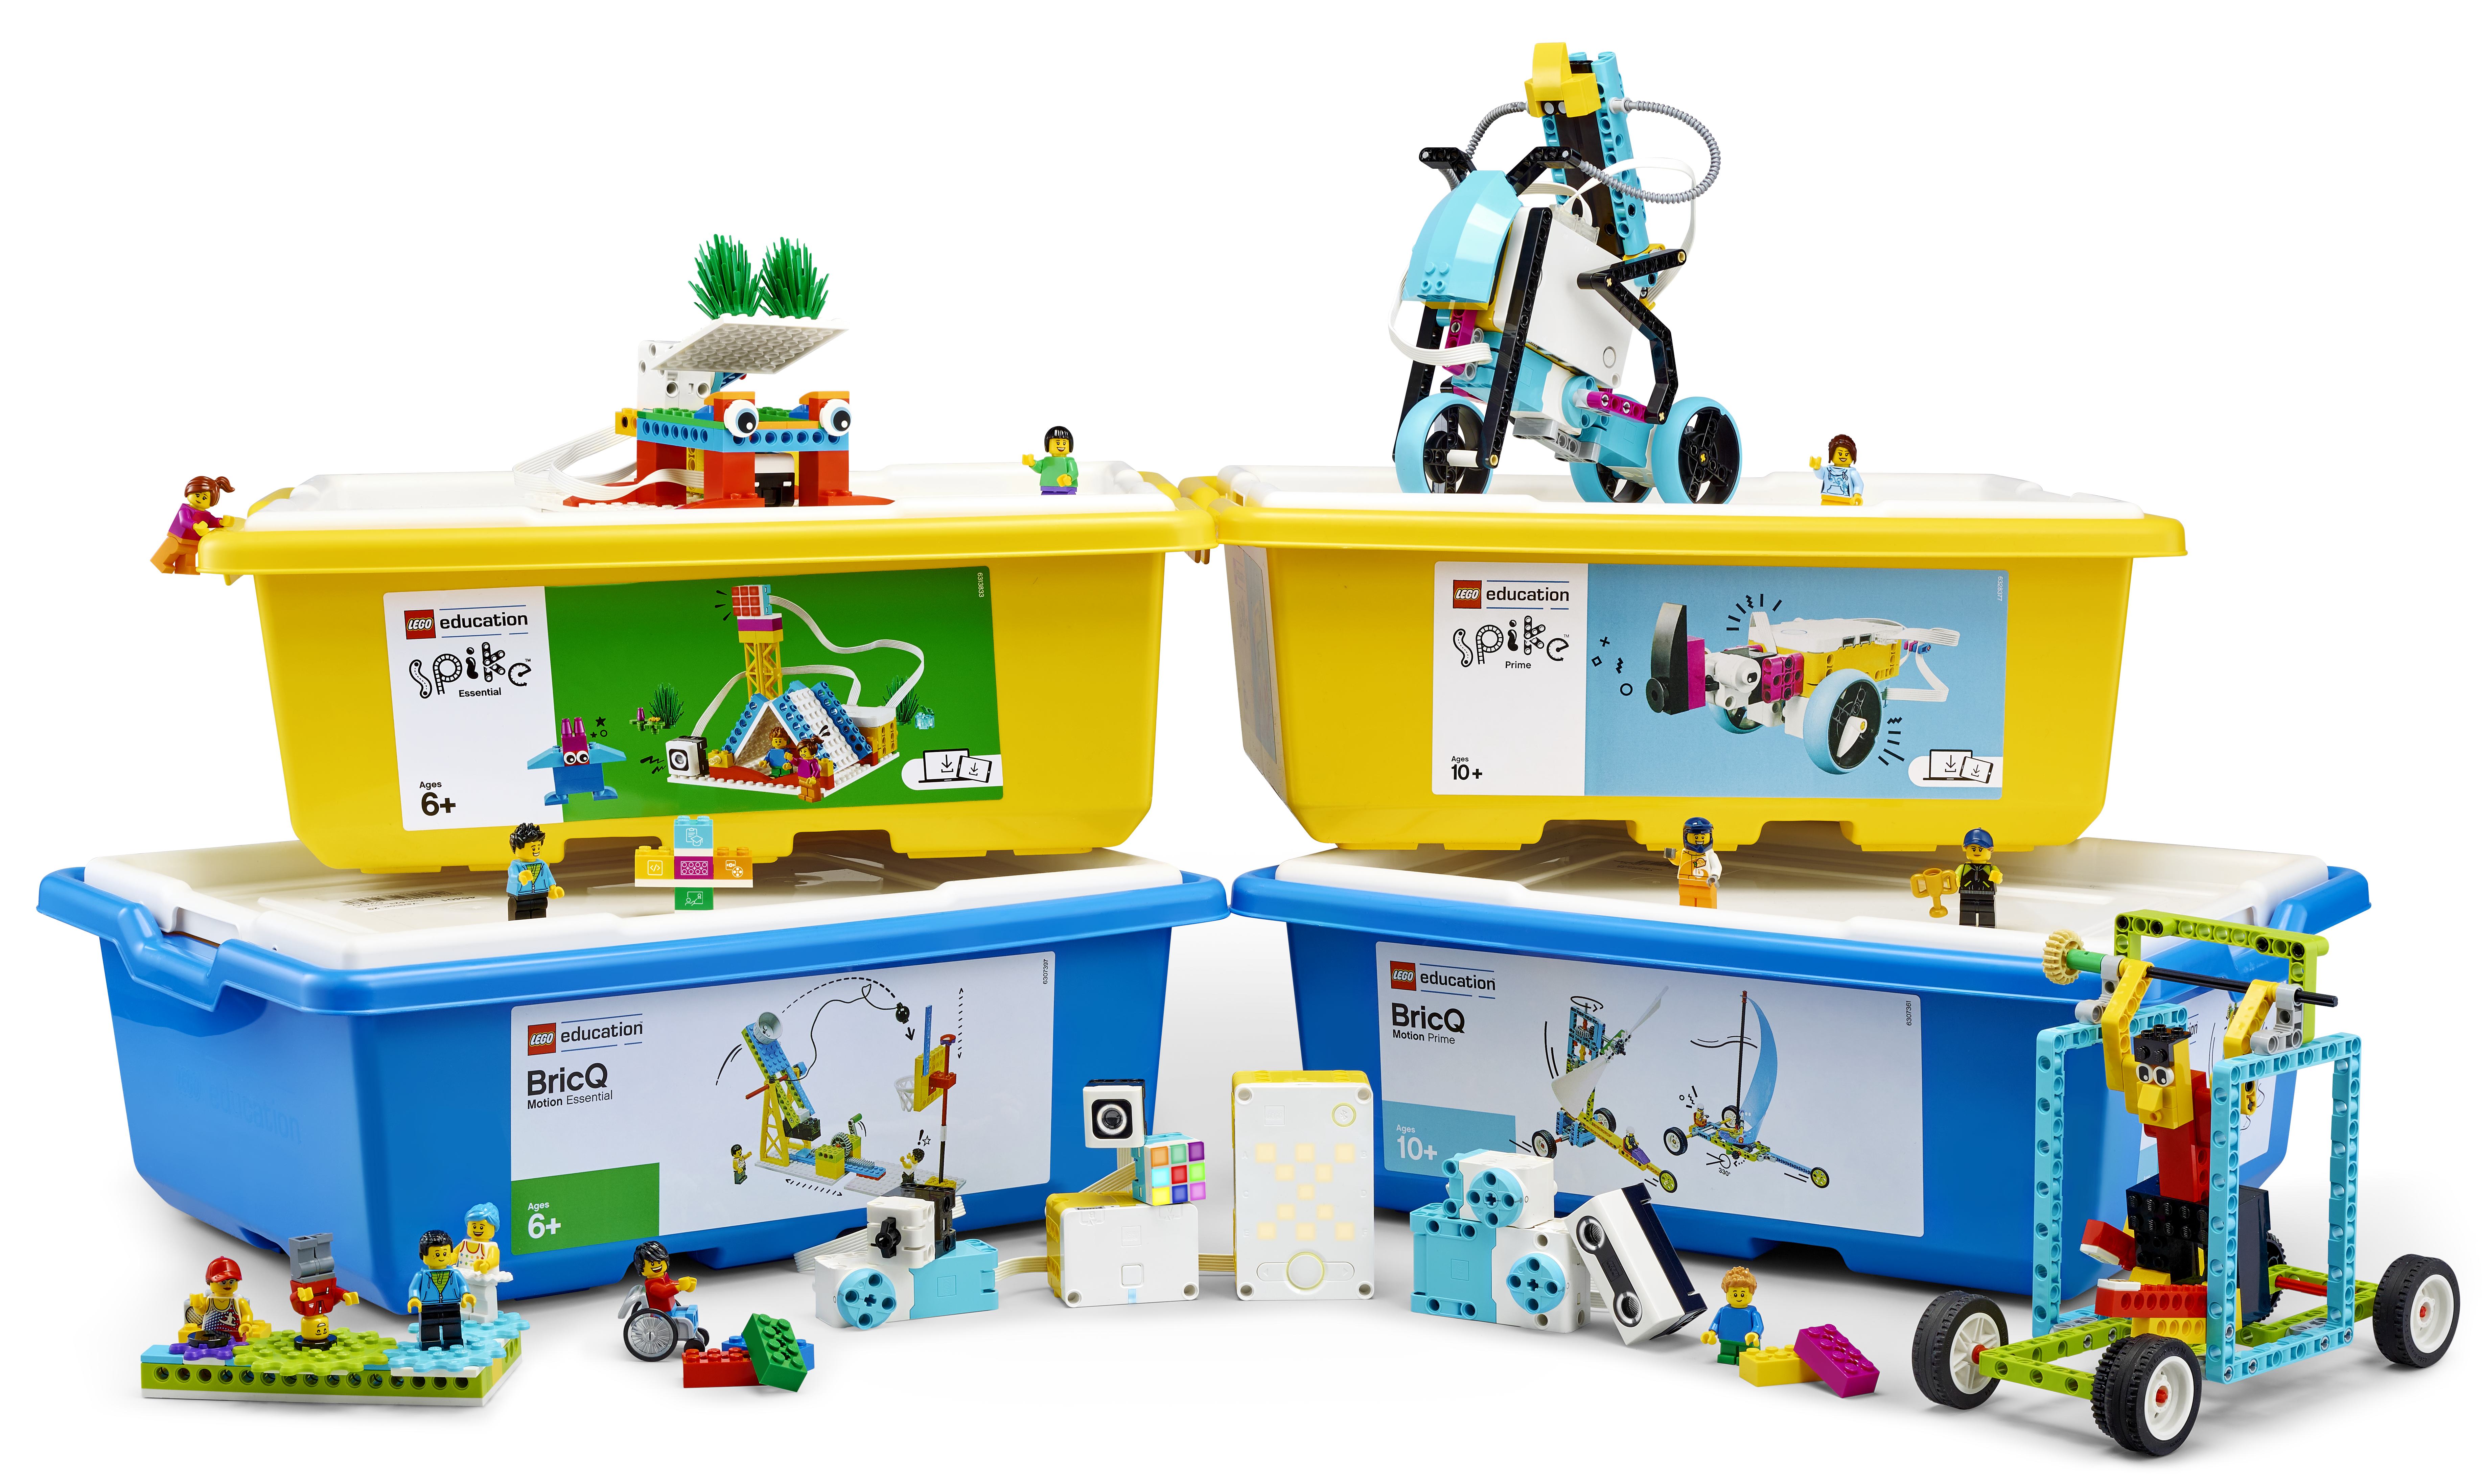 LEGO learning system rozwiązania dla edukacji